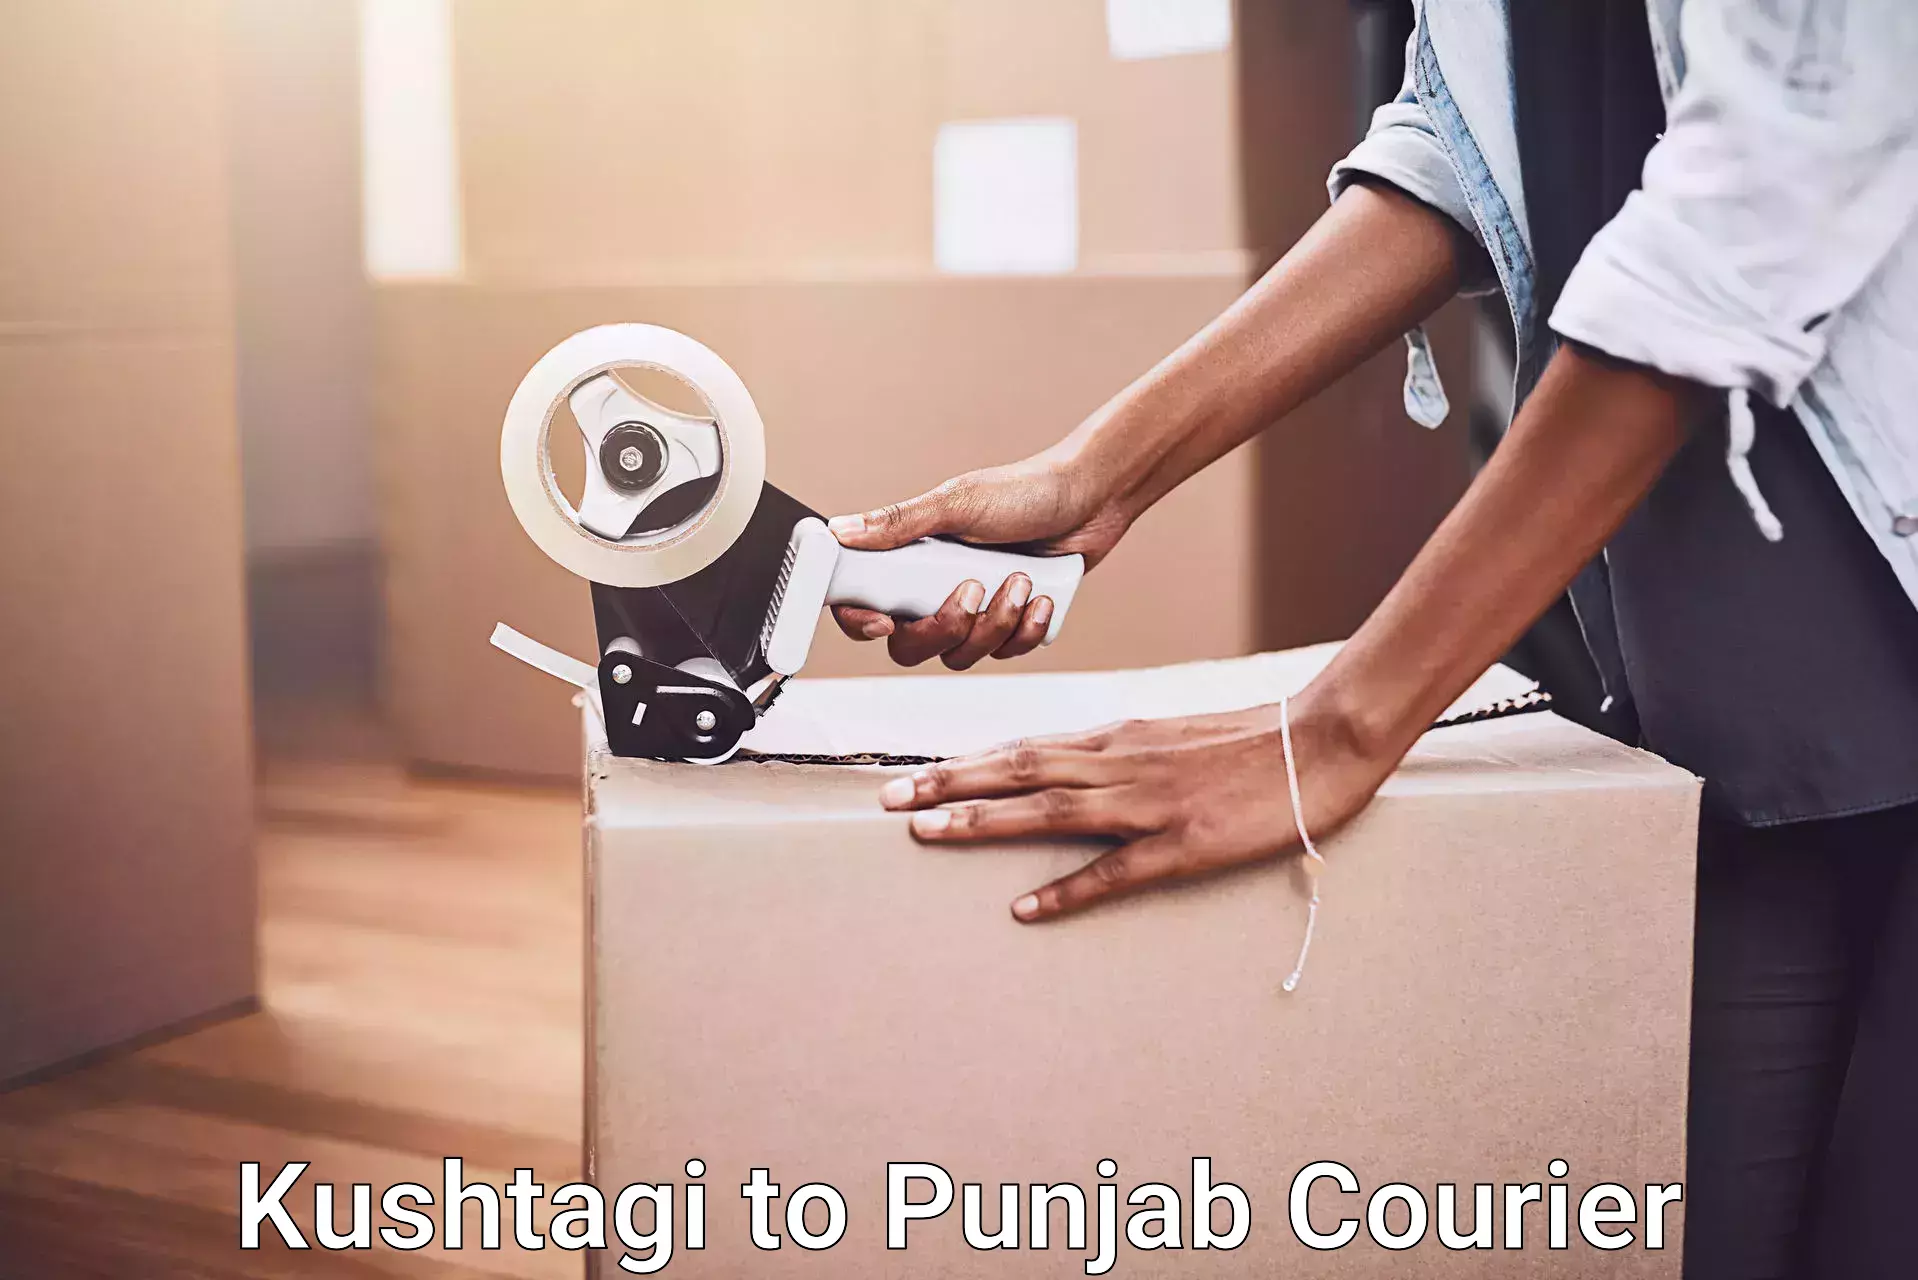 Reliable moving solutions Kushtagi to Central University of Punjab Bathinda